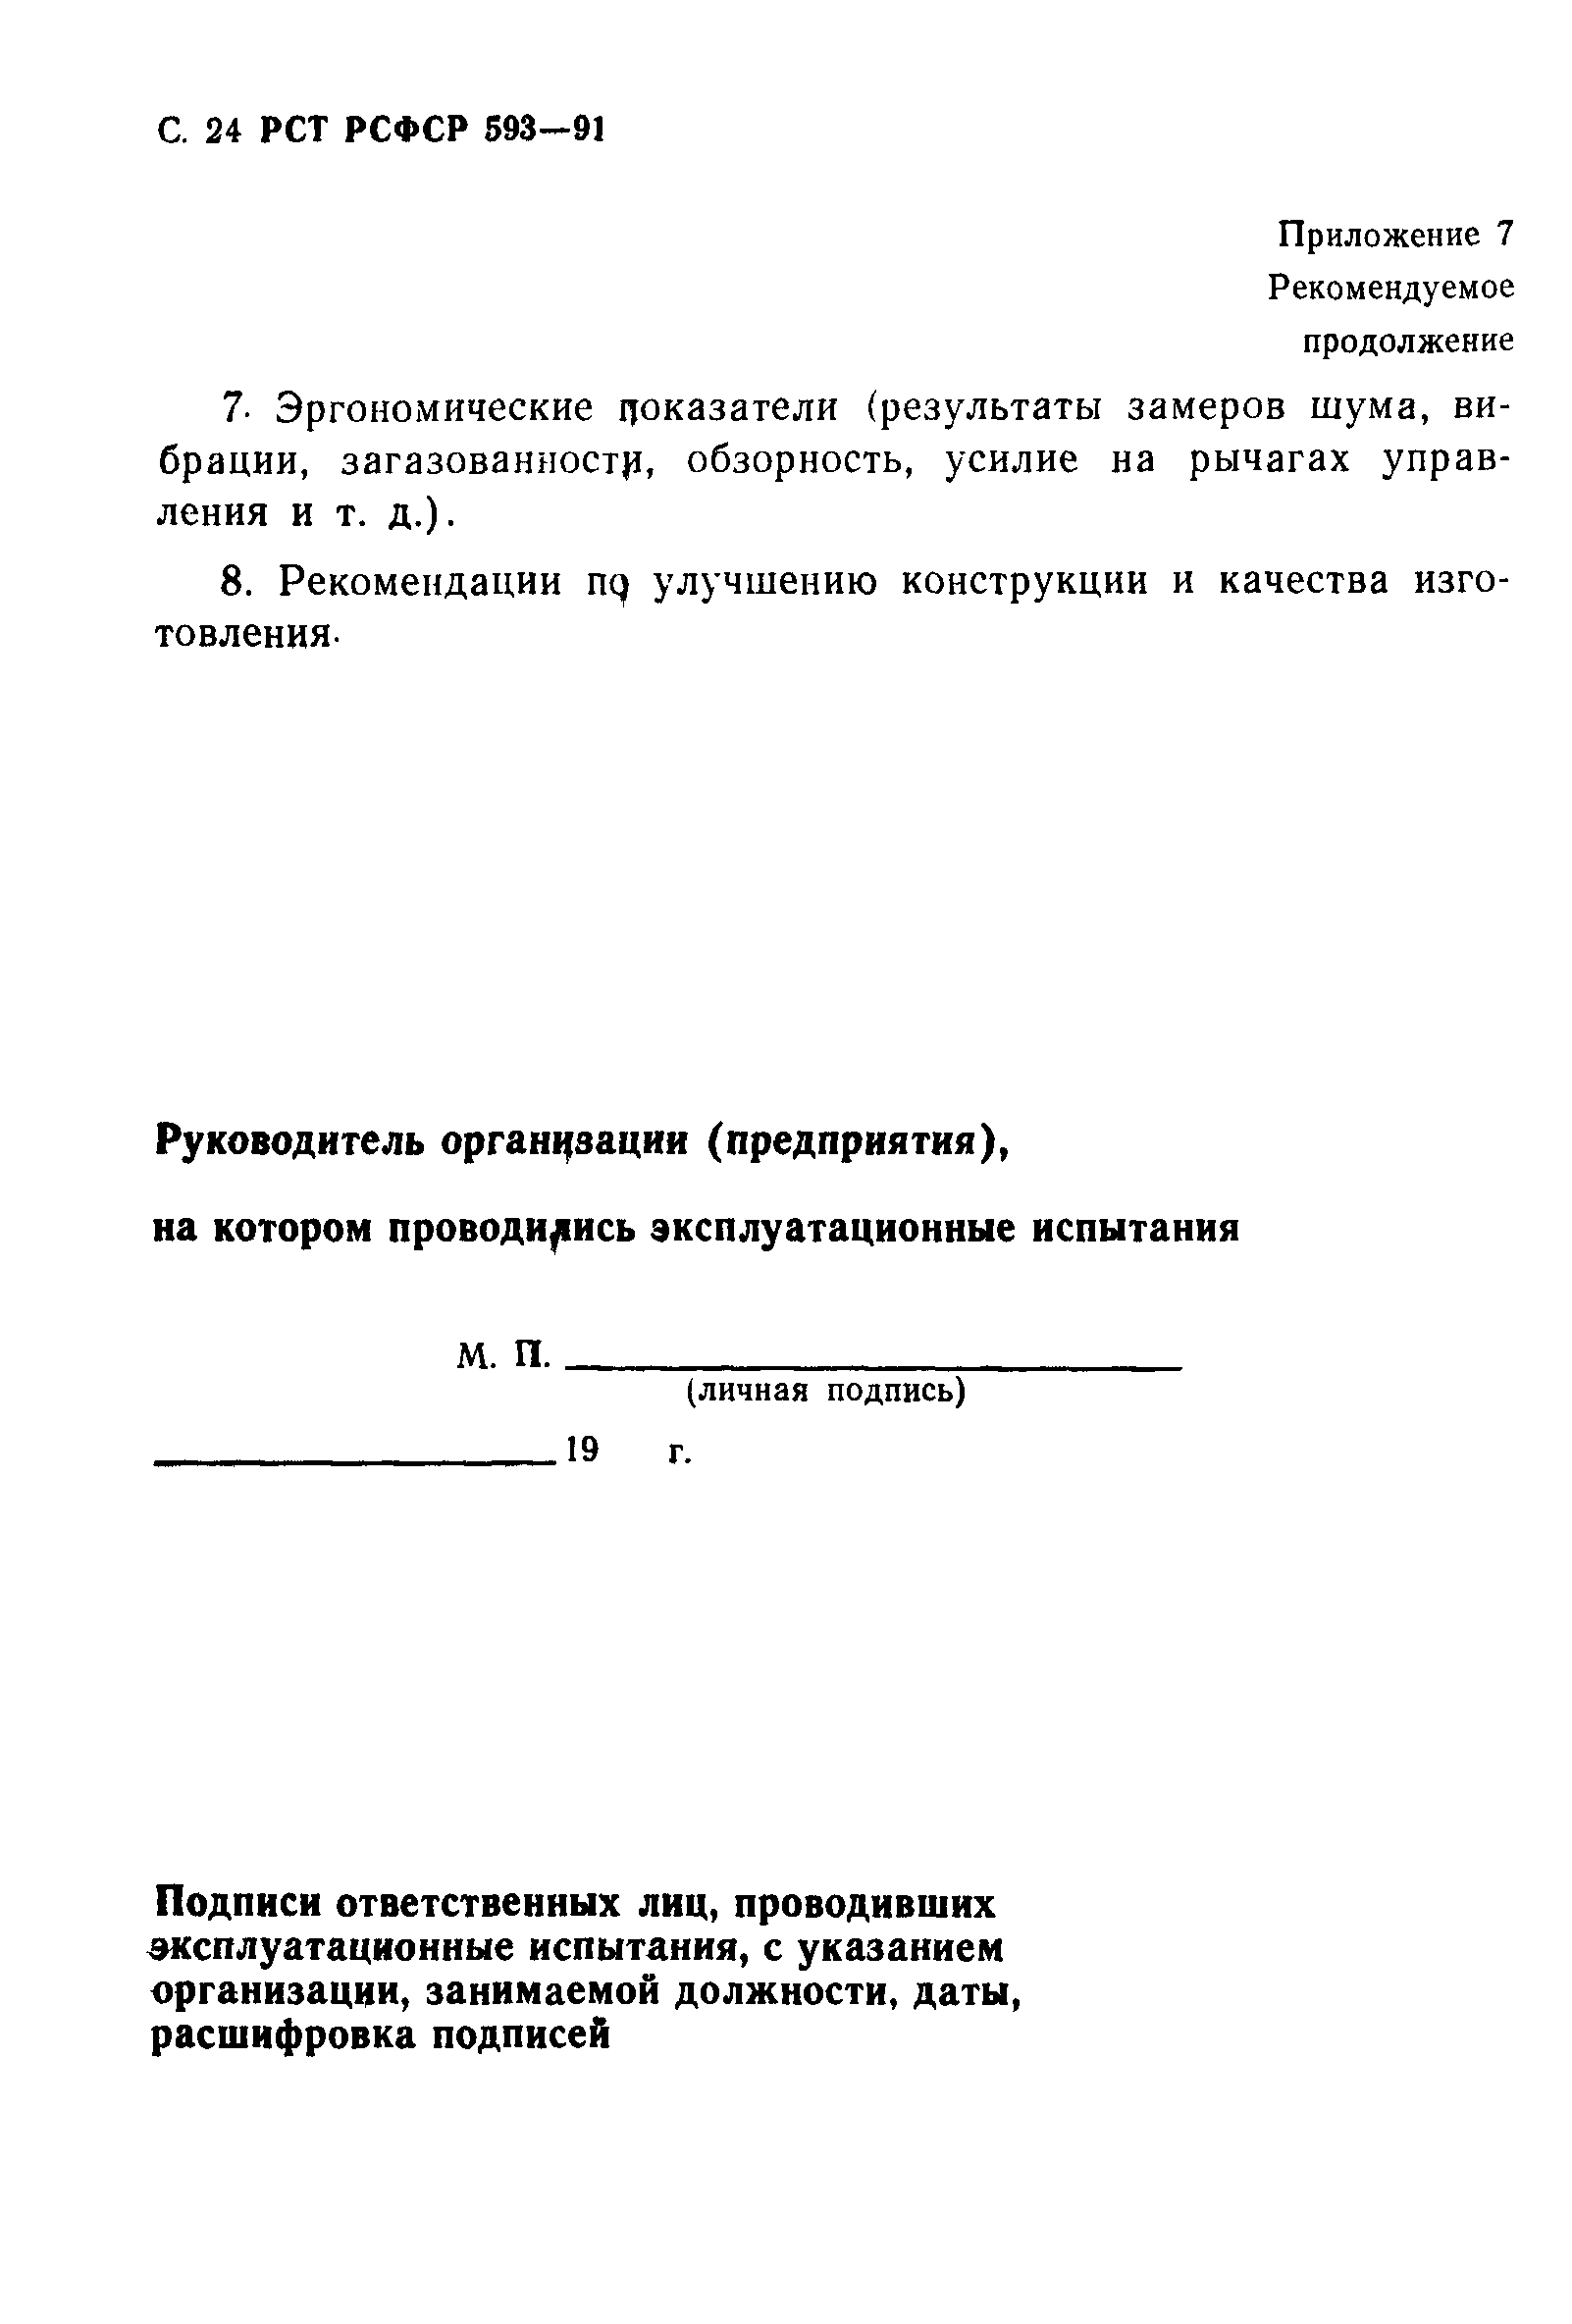 РСТ РСФСР 593-91